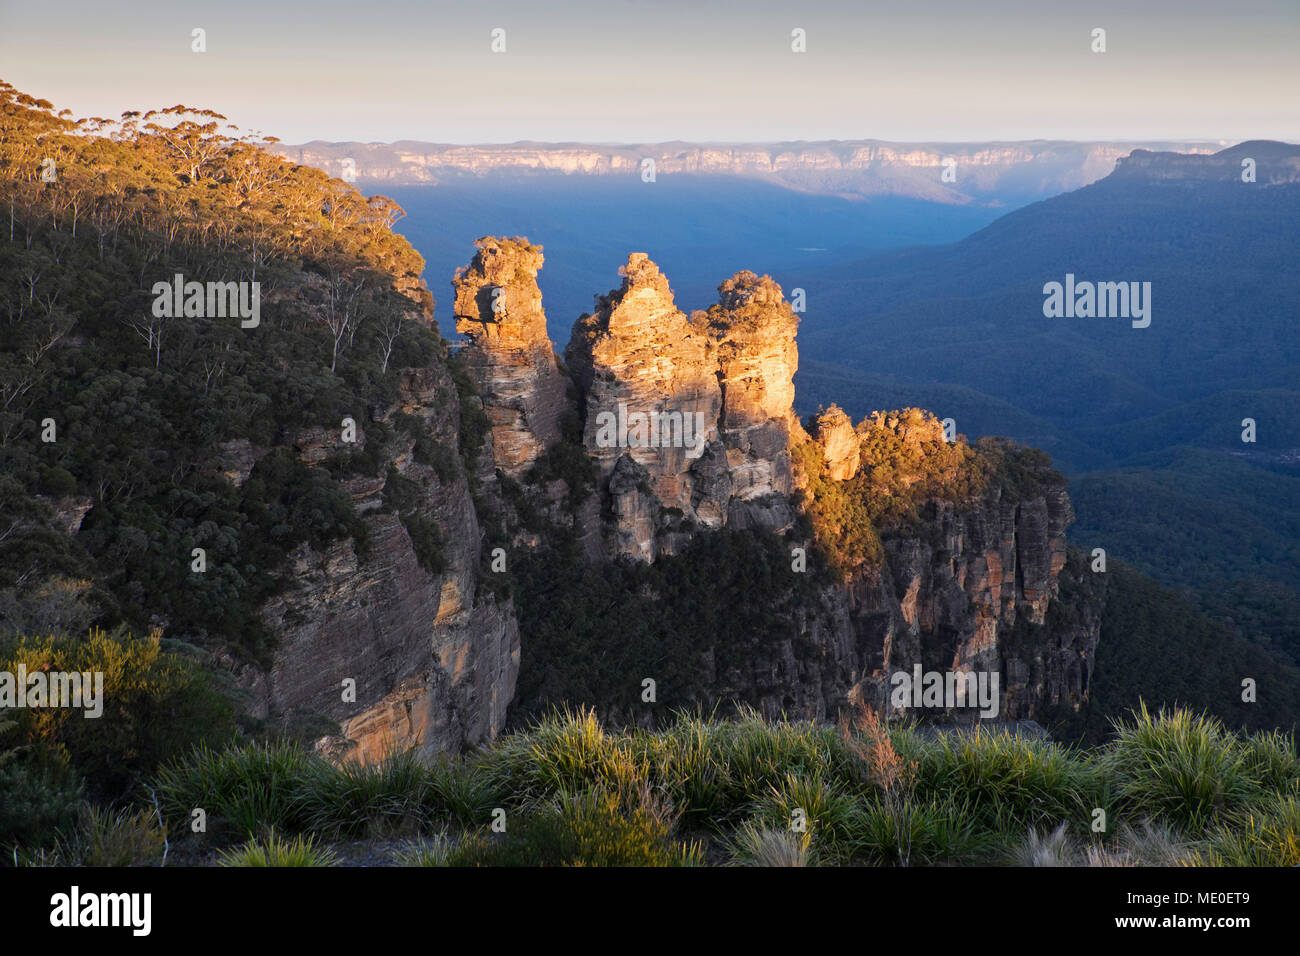 Drei Schwestern Felsformationen bei Sonnenuntergang in den Blue Mountains Nationalpark in New South Wales, Australien Stockfoto